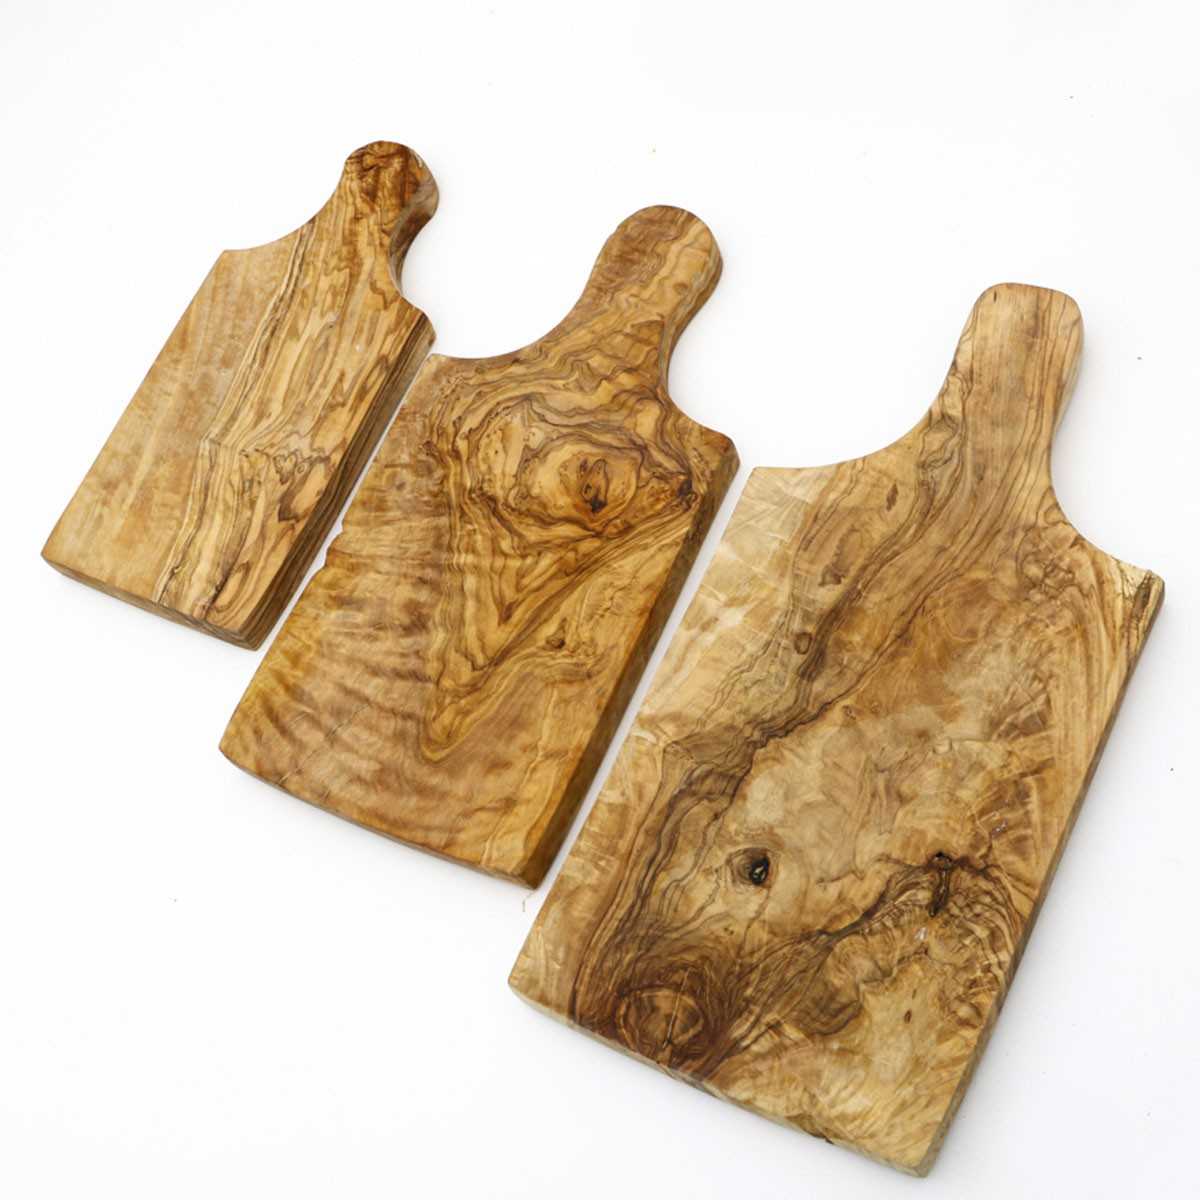 Planche à découper en bois nobles, fabrication française & artisanale